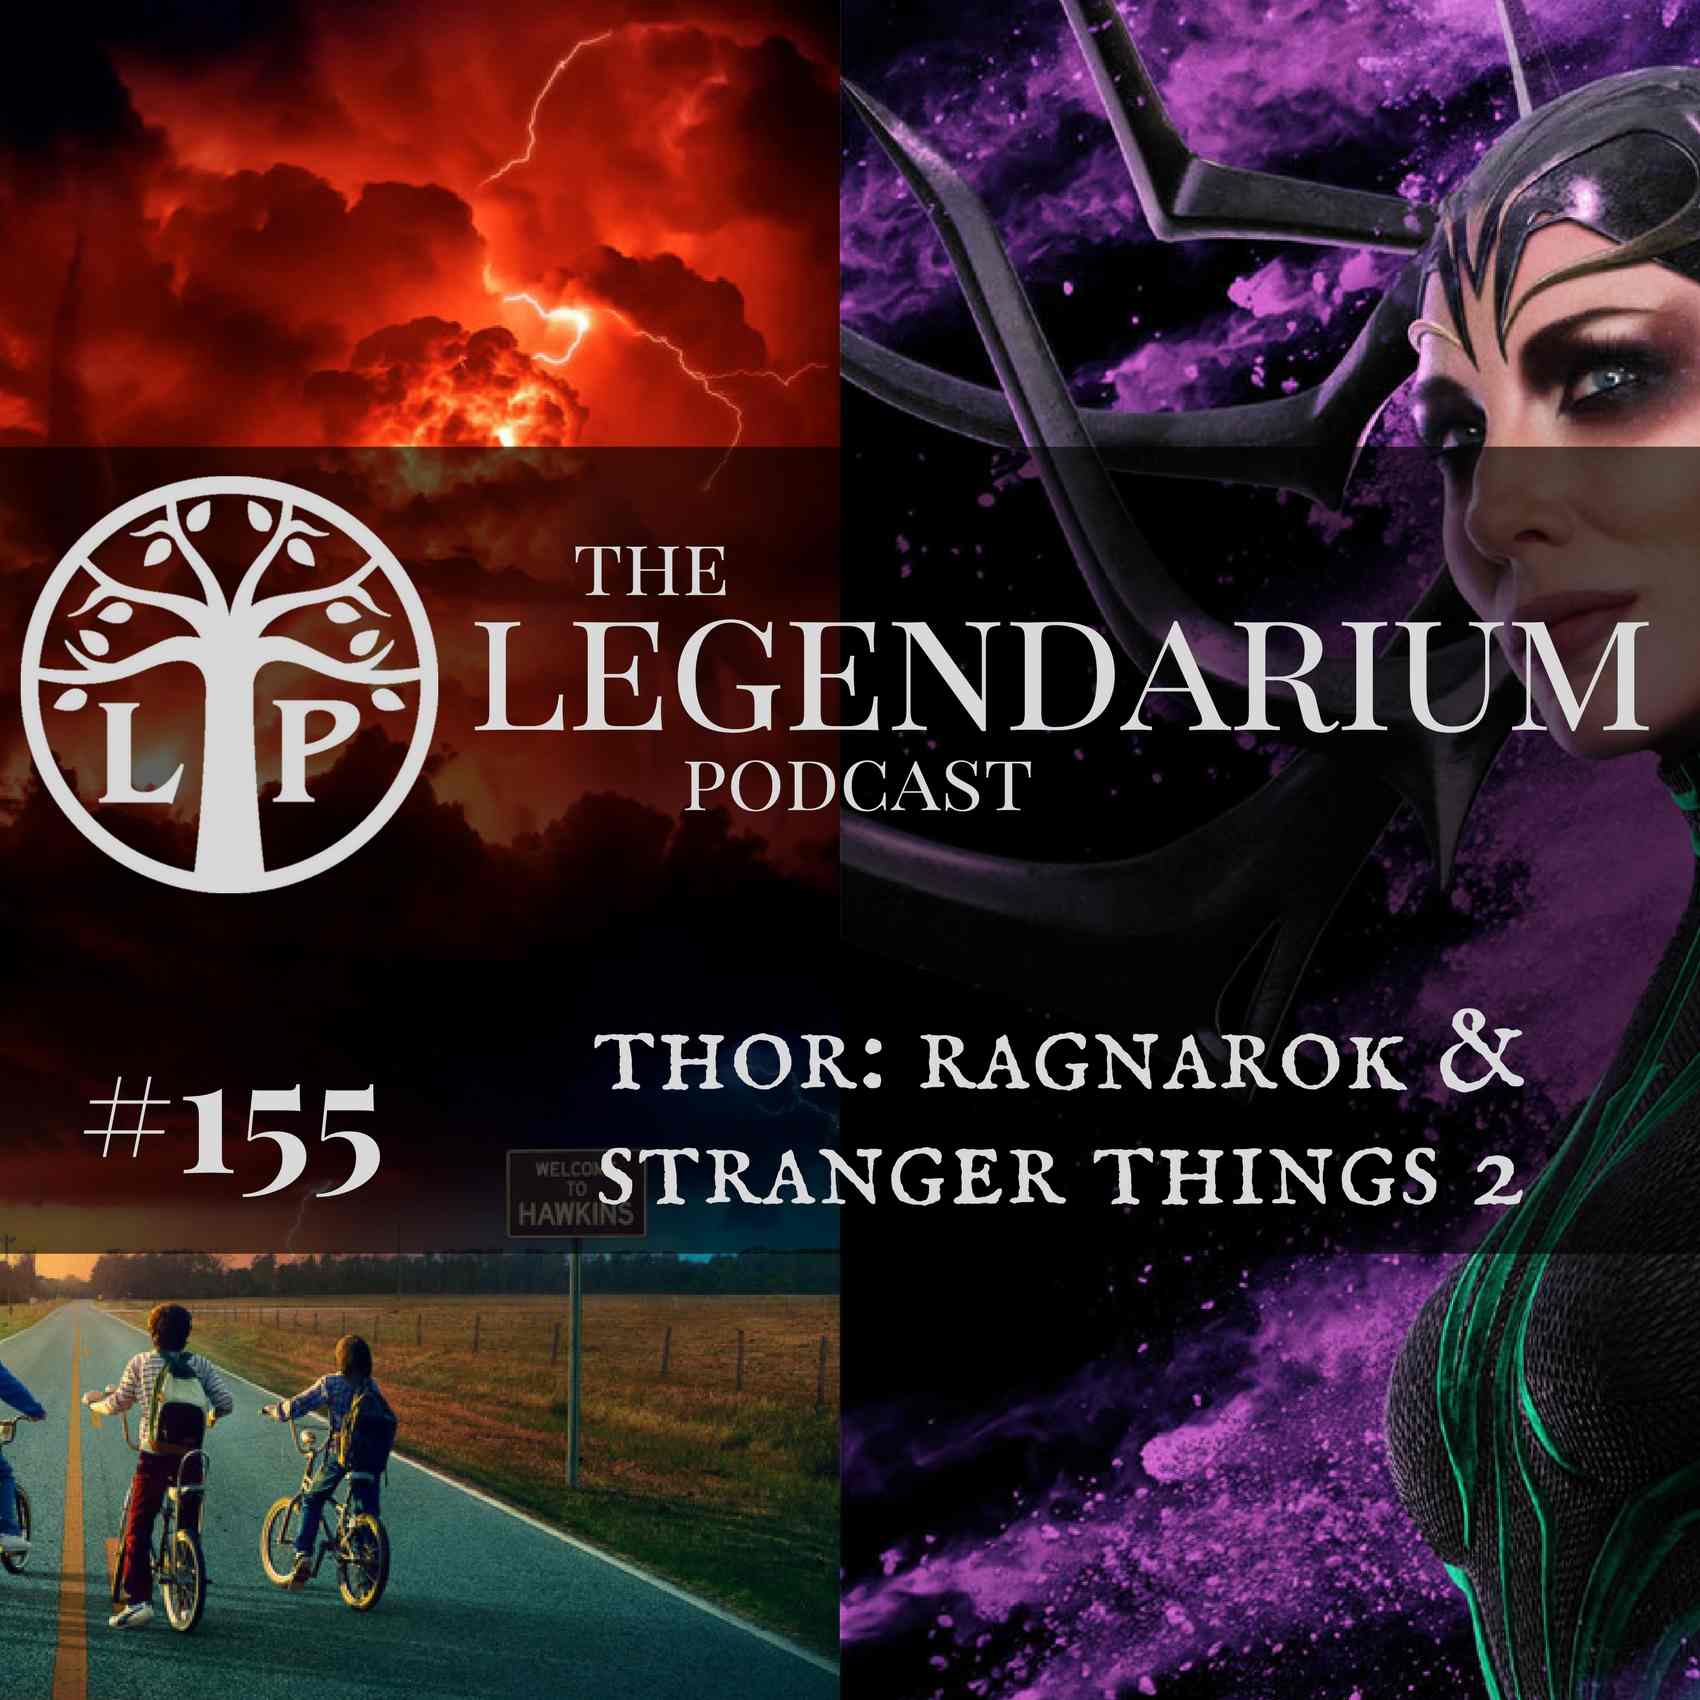 #155. Thor: Ragnarok & Stranger Things 2